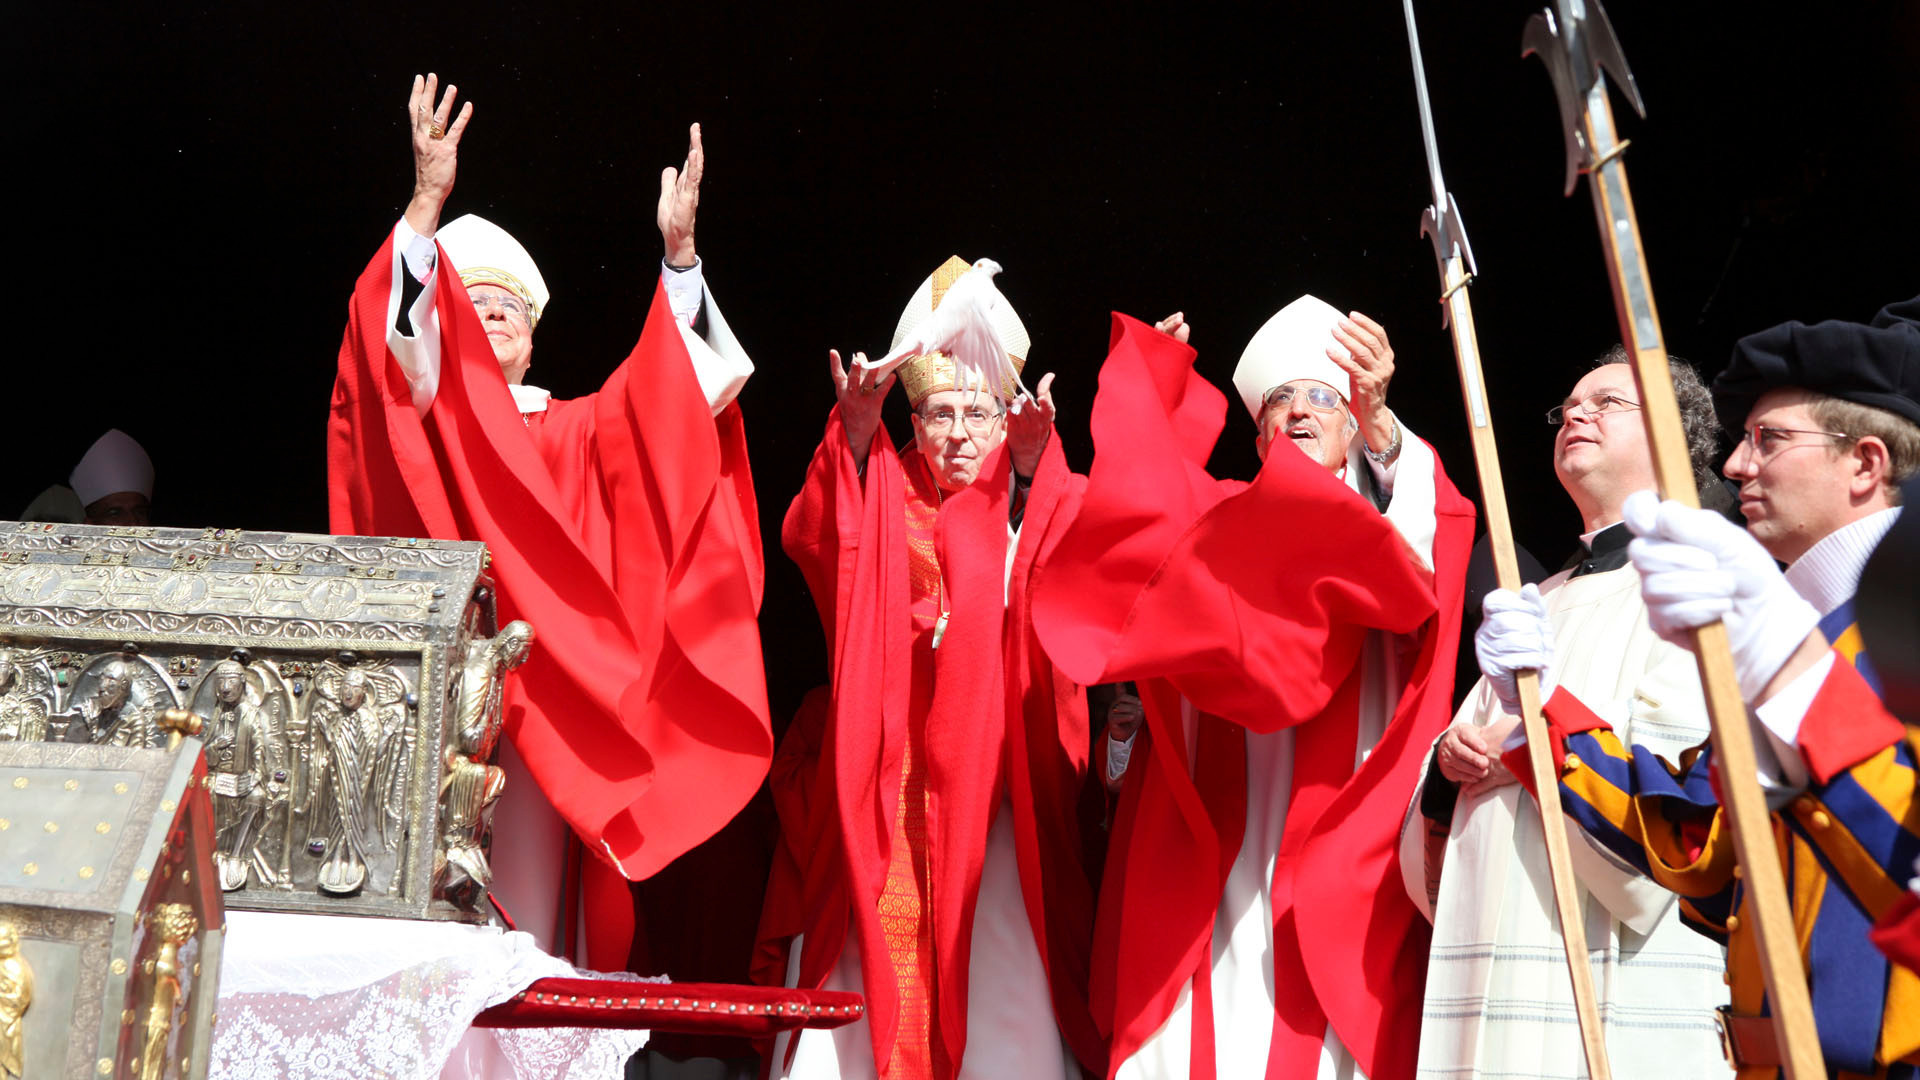 Abschluss 1500-Jahr-Jubiläum Abtei Saint-Maurice: Freilassung der Tauben. Von links: Abt Jean Scarcella, Kardinal Koch, alt-Abt Joseph Roduit